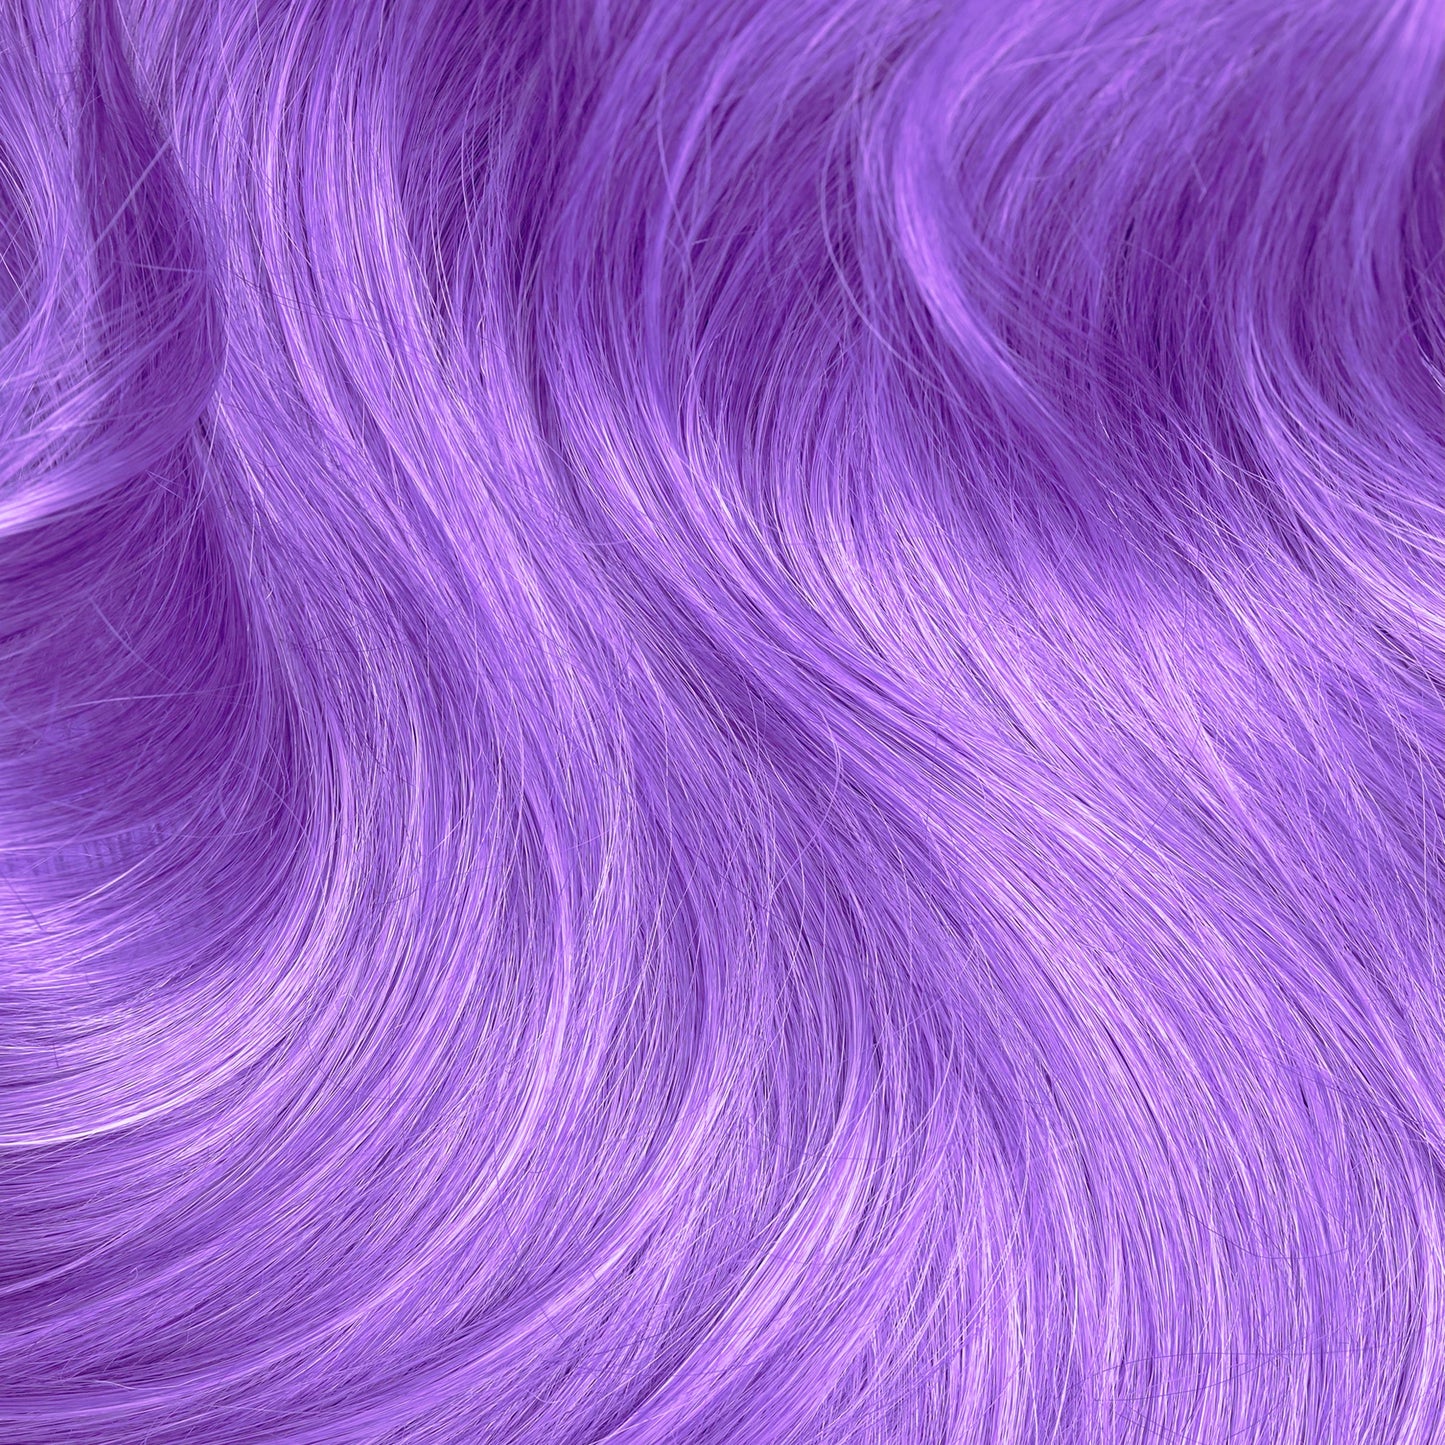 IRIS PASTEL PURPLE hair dye Lunar Tides